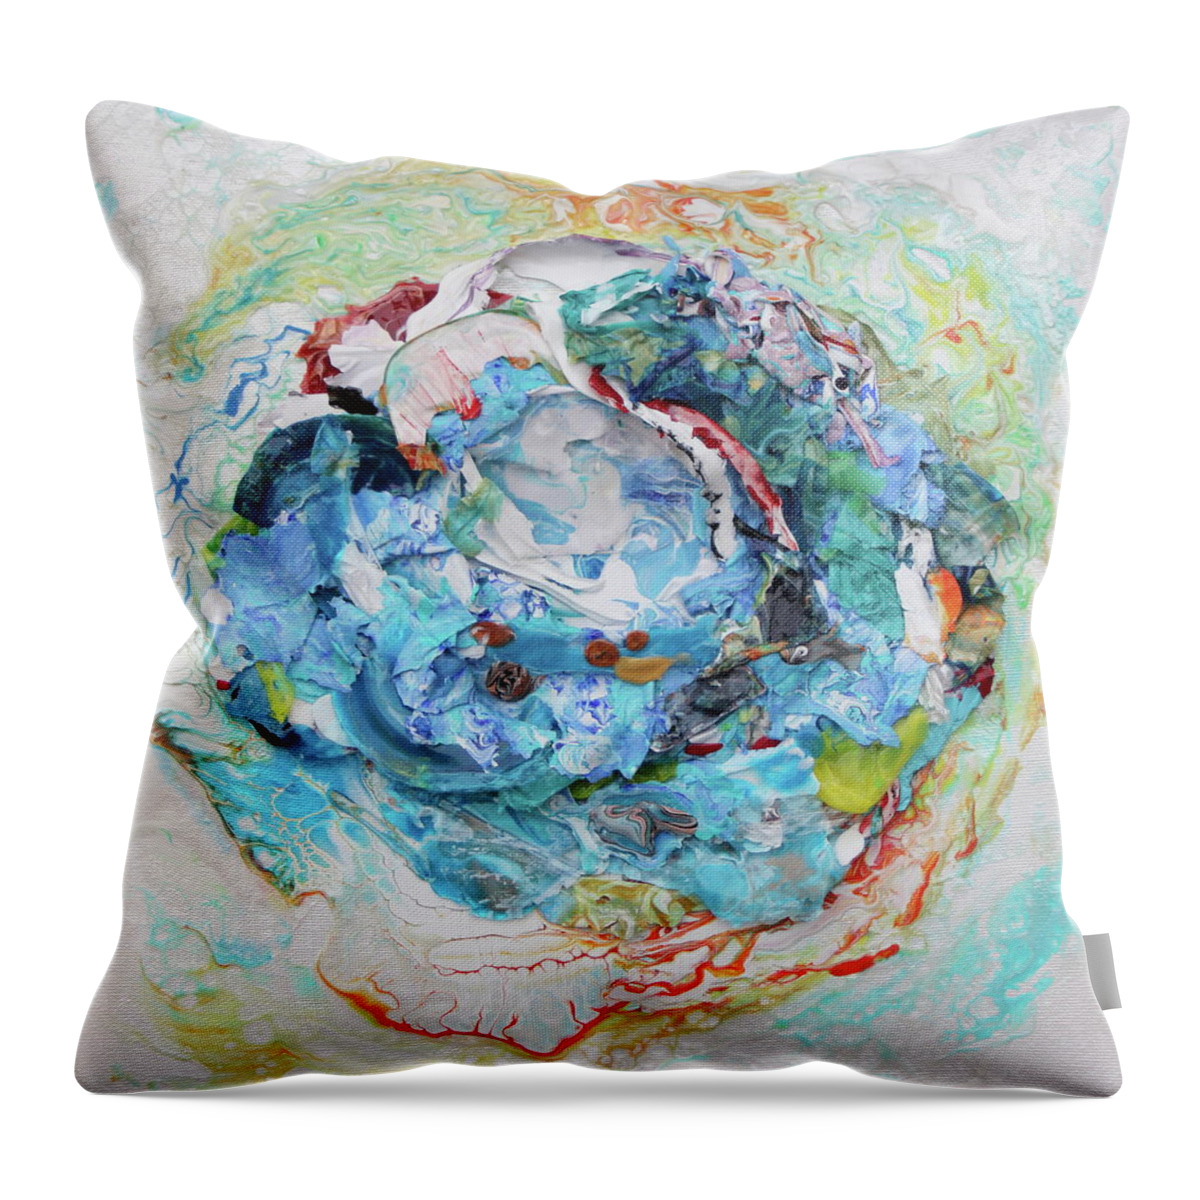 3d Throw Pillow featuring the painting Octopus' Garden 2 by Madeleine Arnett